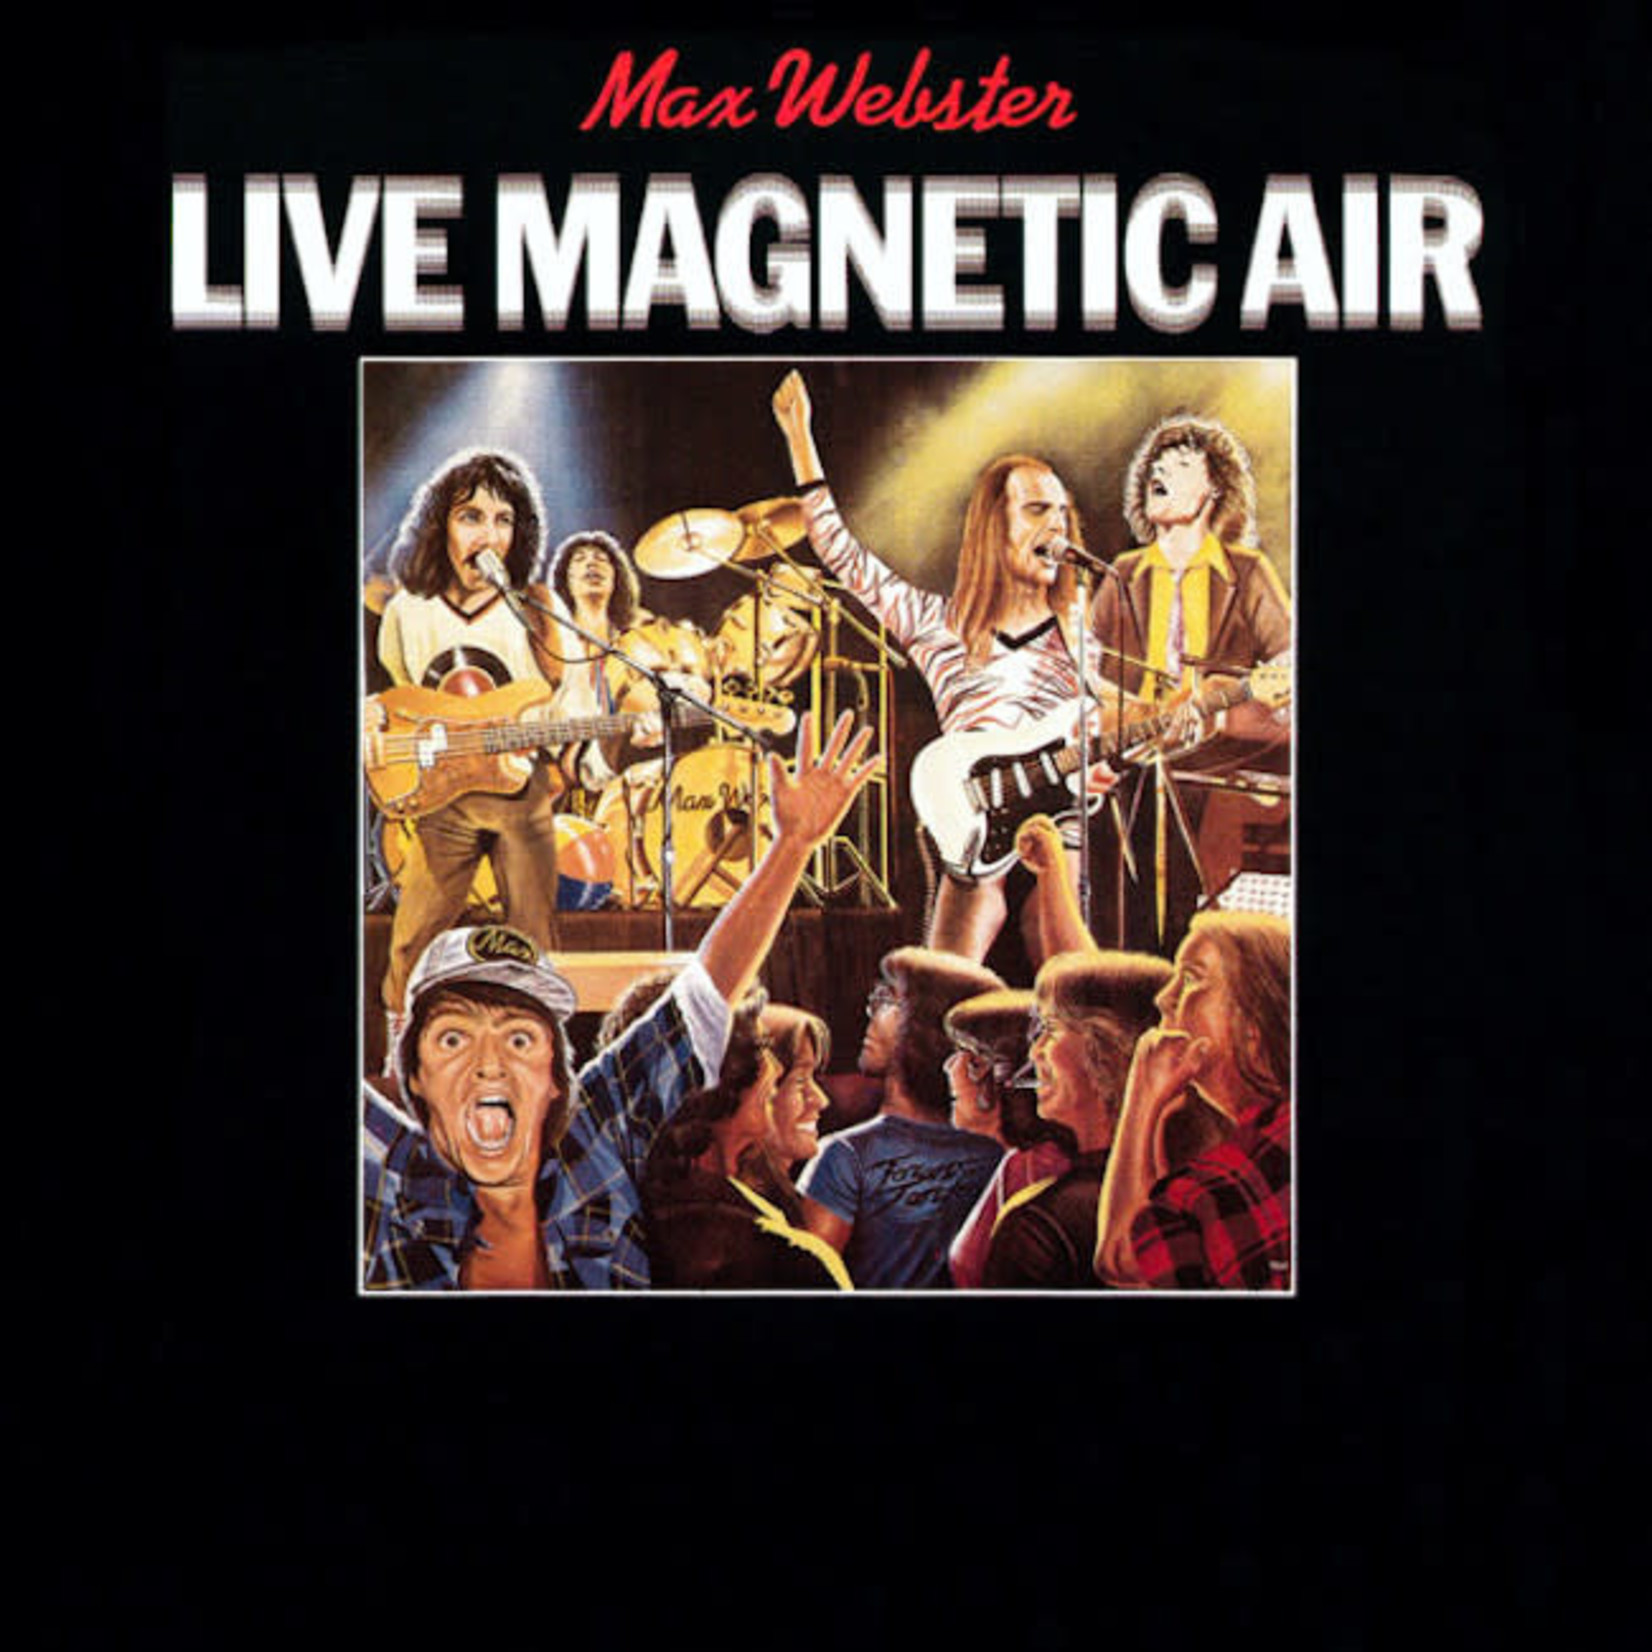 [Vintage] Max Webster - Live Magnetic Air